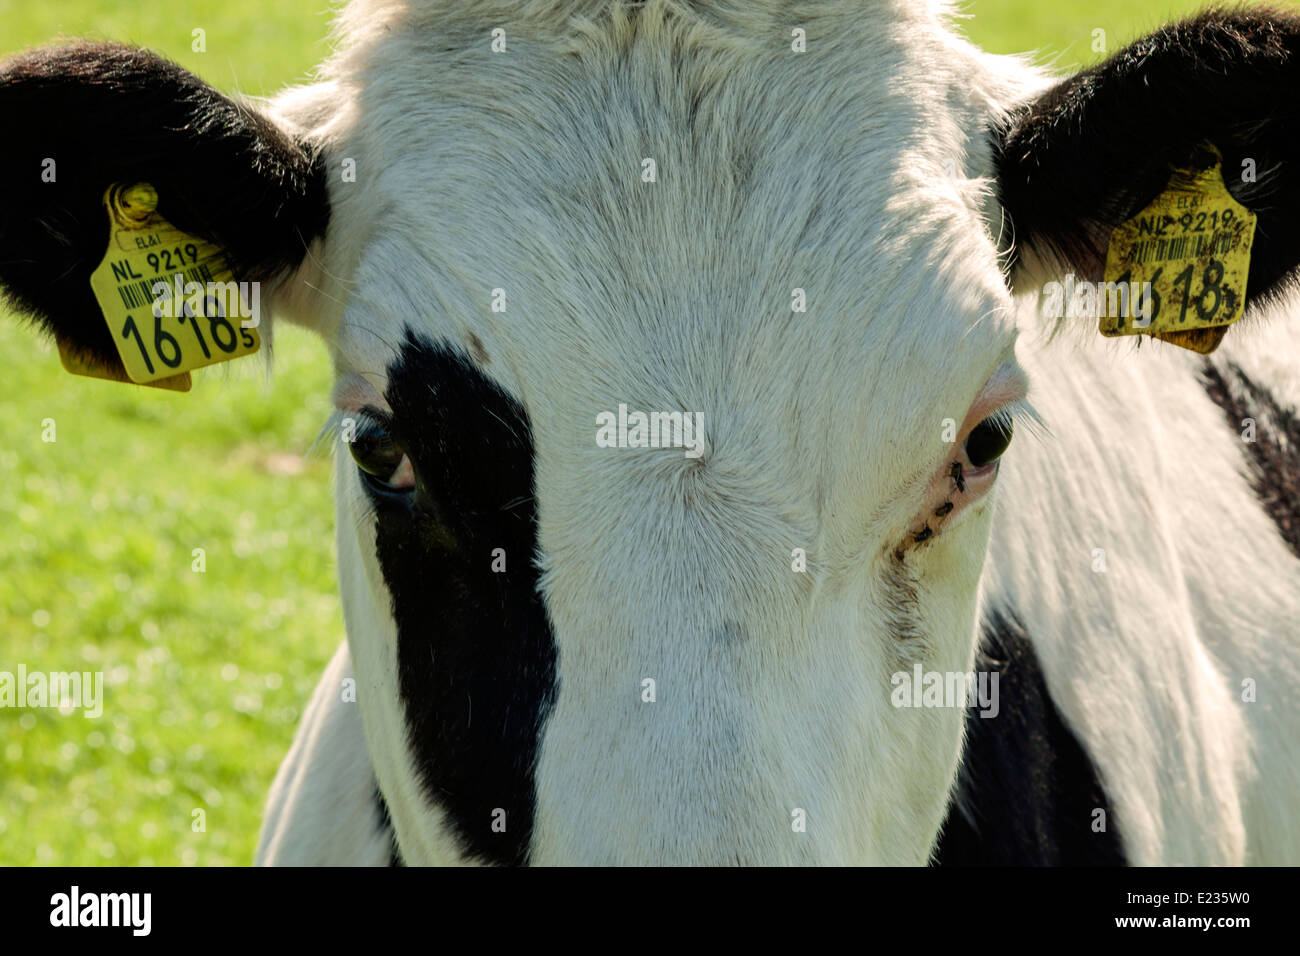 Niederlande: Porträt einer schwarzen und weißen Milchkuh mit ID-Tags auf beiden Ohren. Stockfoto